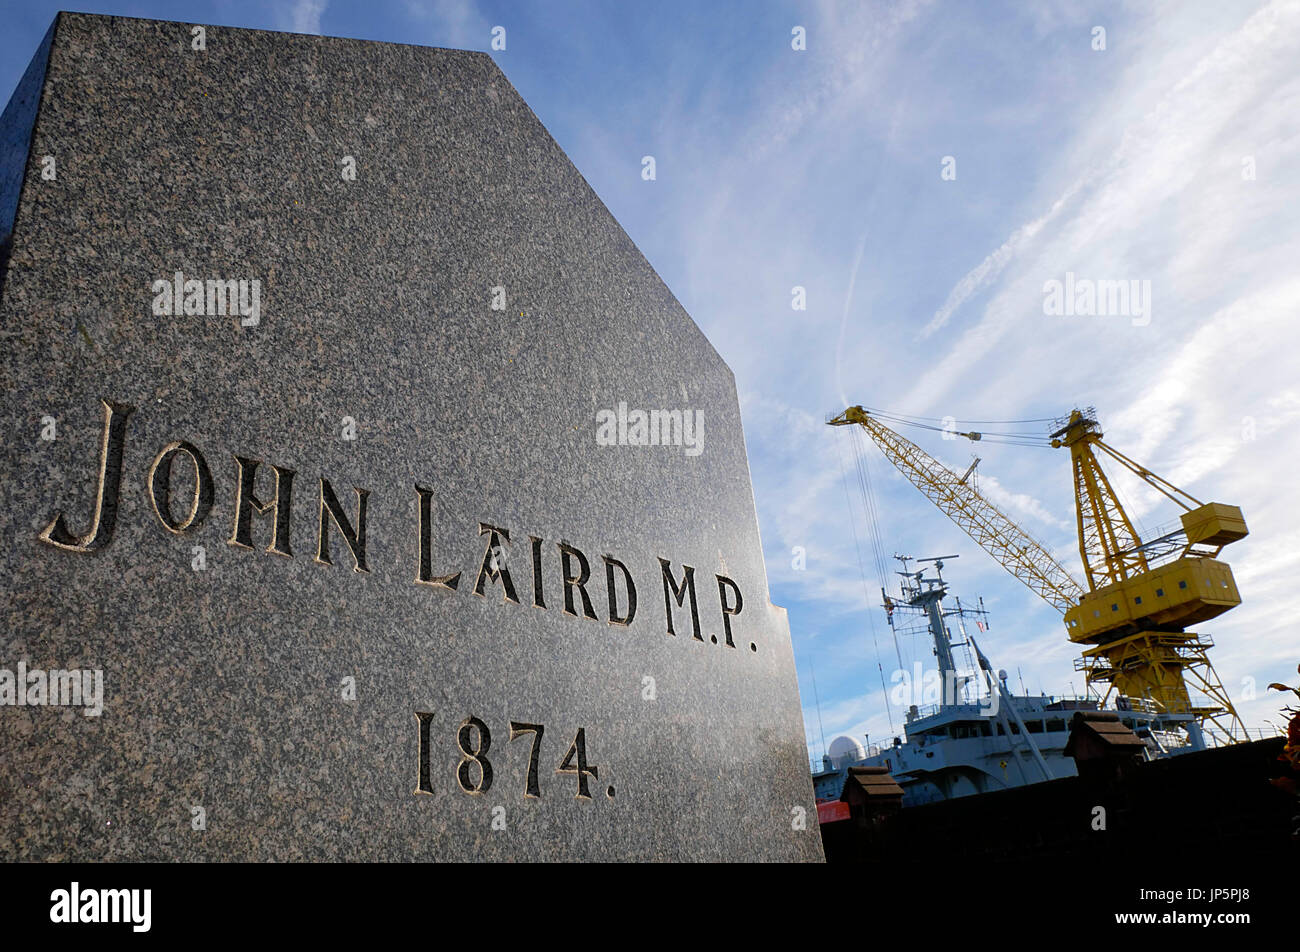 Pietra tombale del grande costruttore navale britannico John Laird p.f., di Birkenhead chi è legacy è il Cammell Laird cantiere Birkenhead, Merseyside. Foto Stock